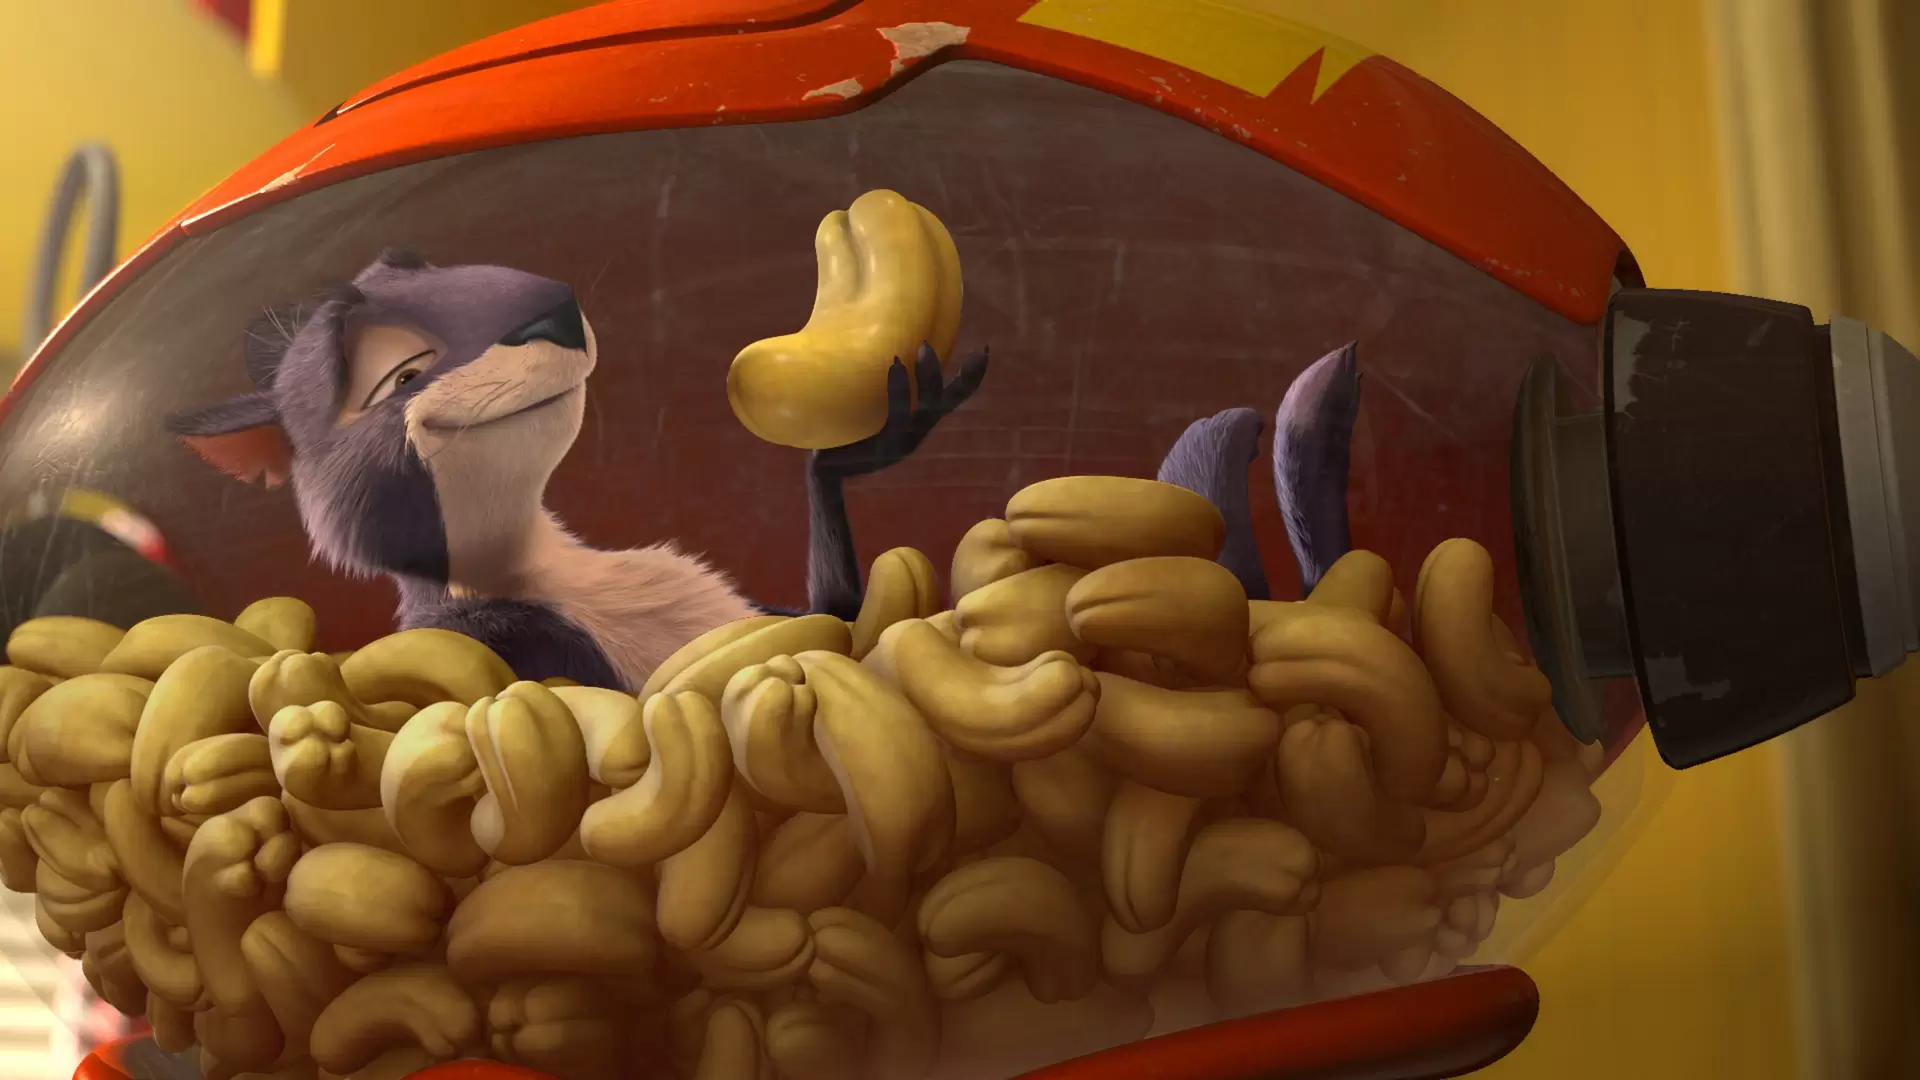 دانلود انیمیشن The Nut Job 2014 با زیرنویس فارسی و تماشای آنلاین